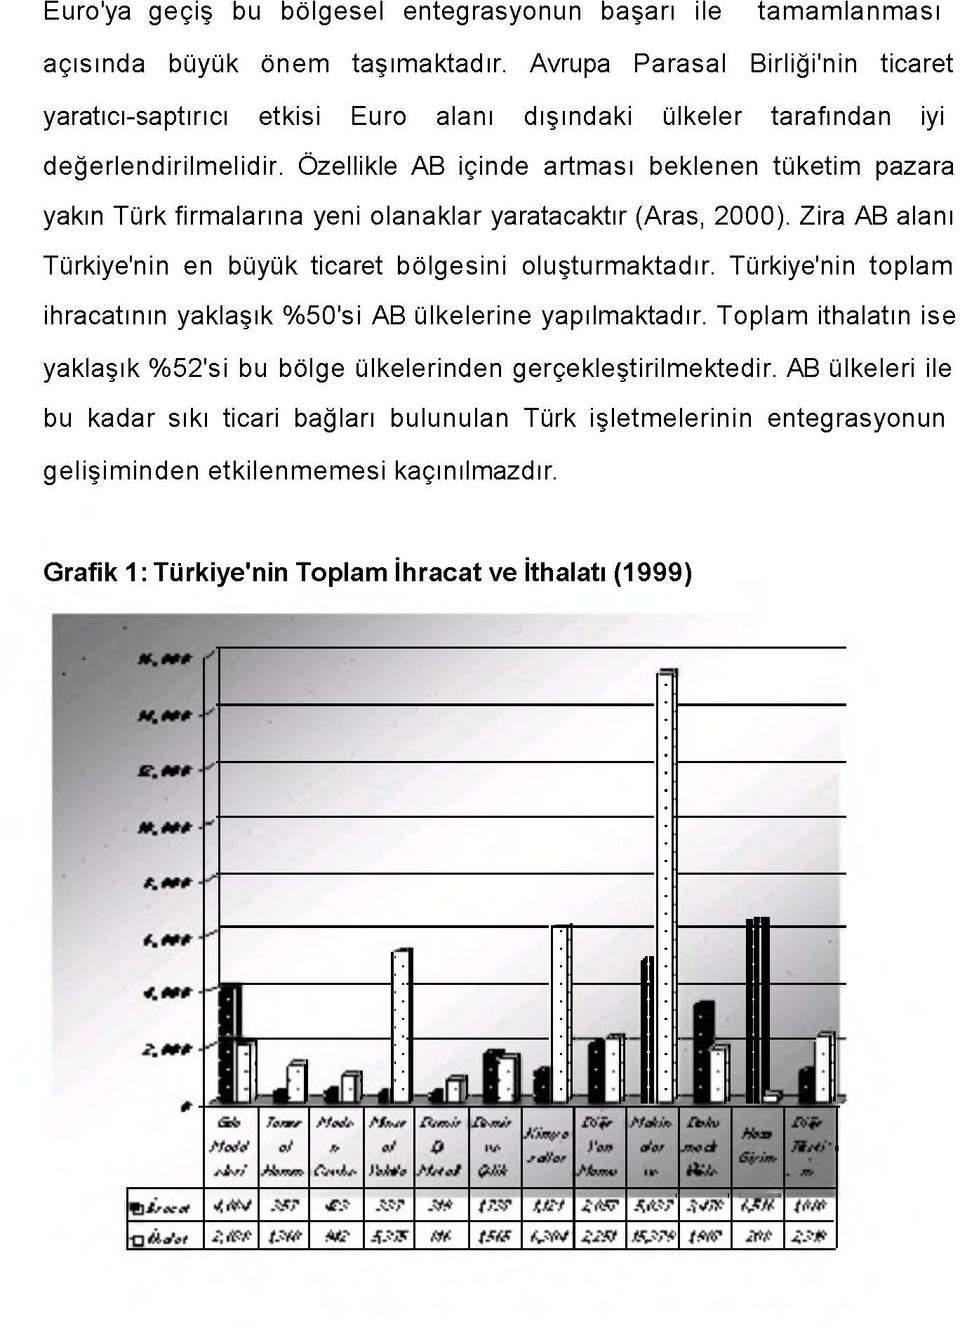 Özellikle AB içinde artması beklenen tüketim pazara yakın Türk firm alarına yeni olanaklar yaratacaktır (Aras, 2000). Zira AB alanı Türkiye'nin en büyük ticaret bölgesini oluşturmaktadır.